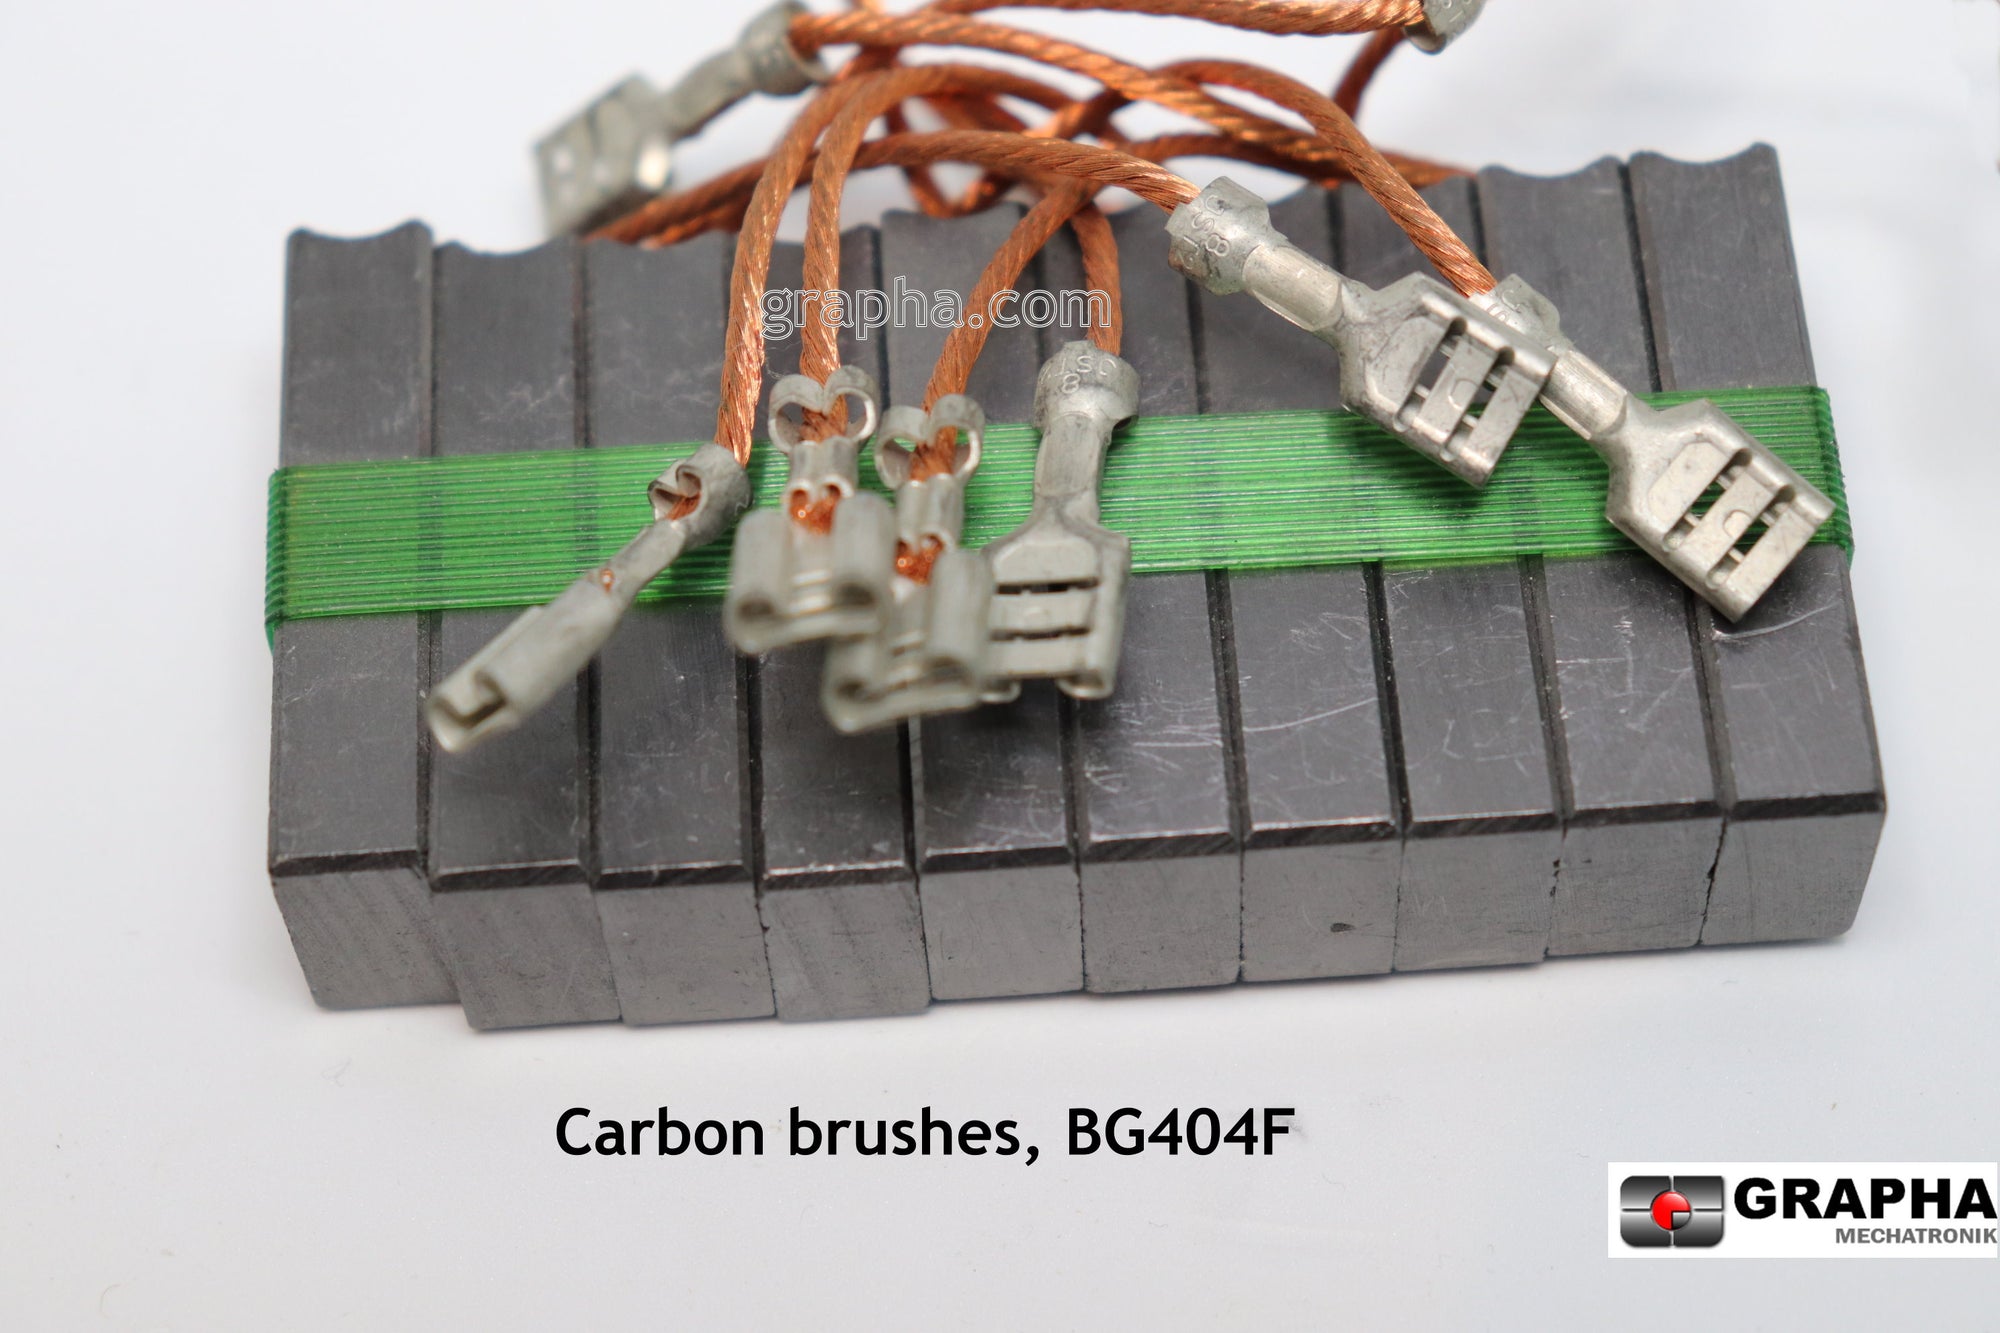 BG404F Carbon brushes